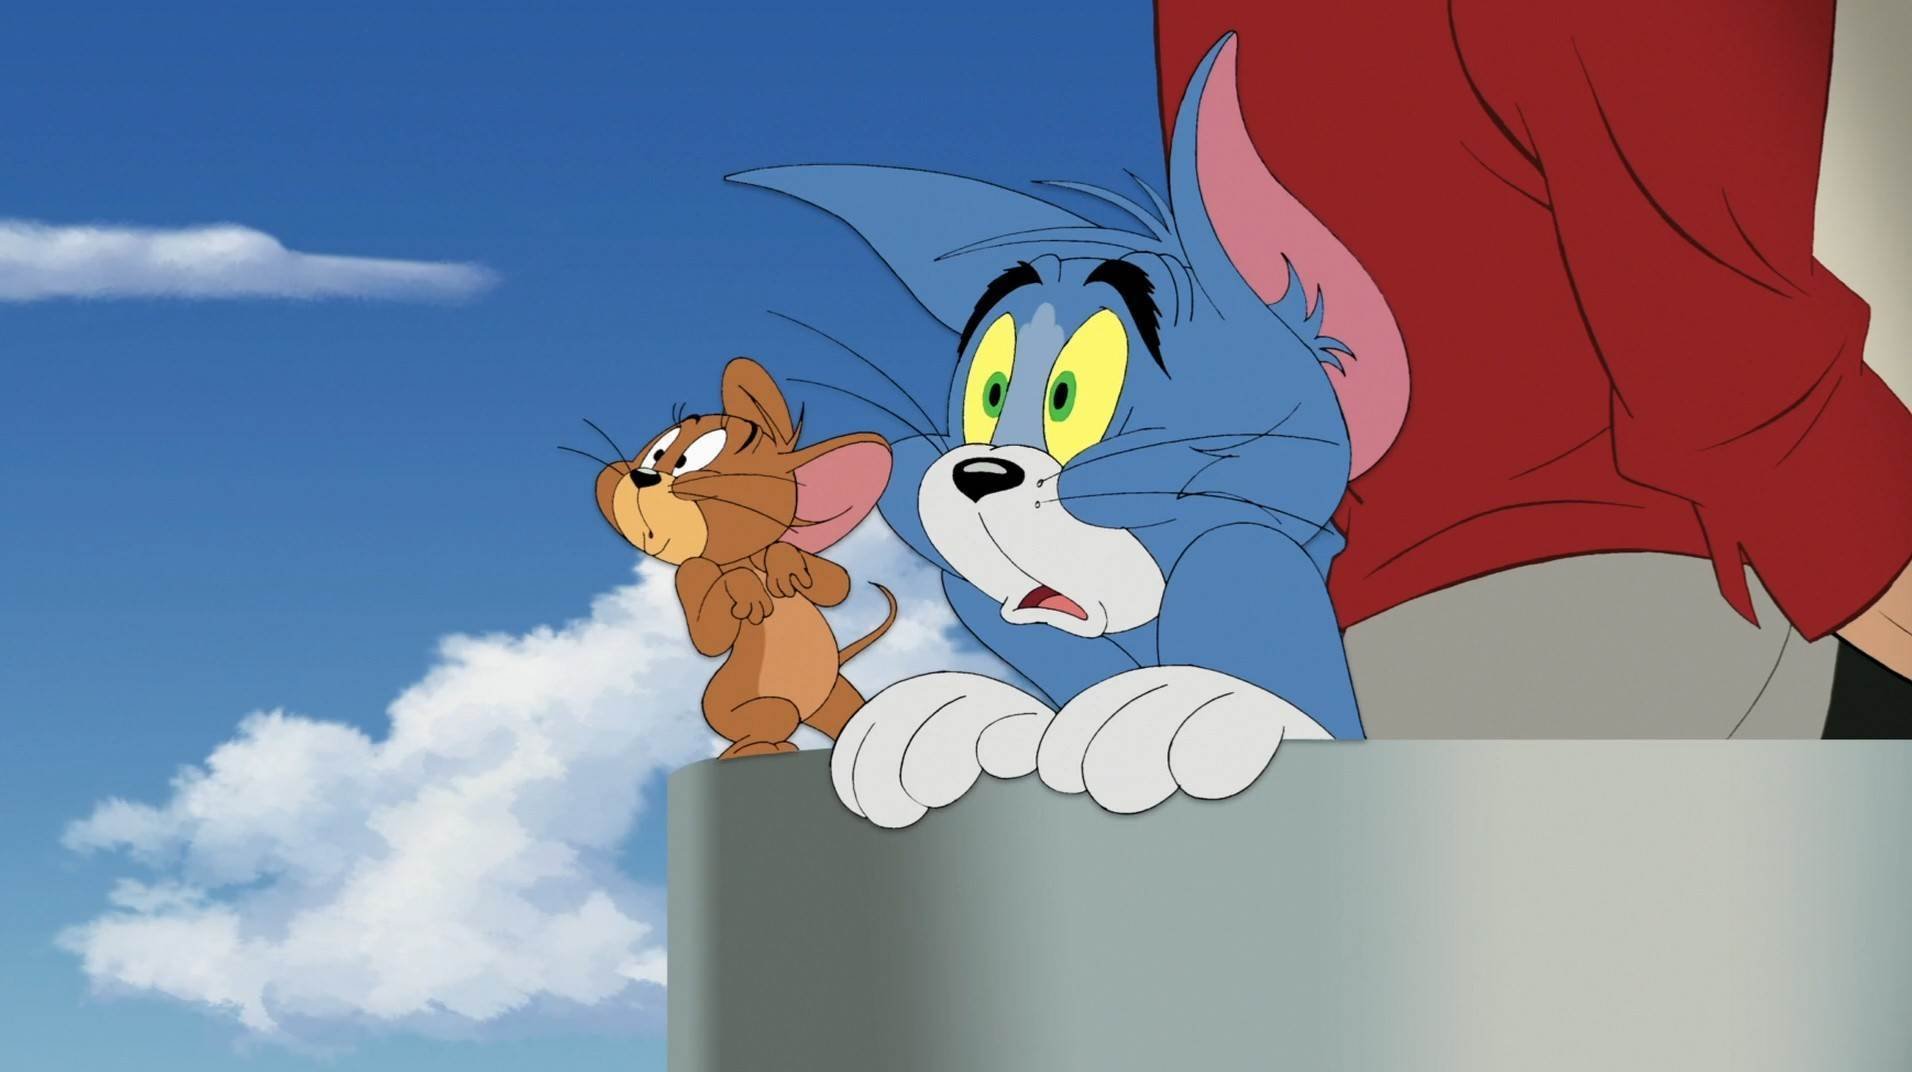 Tom and jerry 55. Tom and Jerry. Tom and Jerry 2020. Том и Джерри 1963-1967 том.